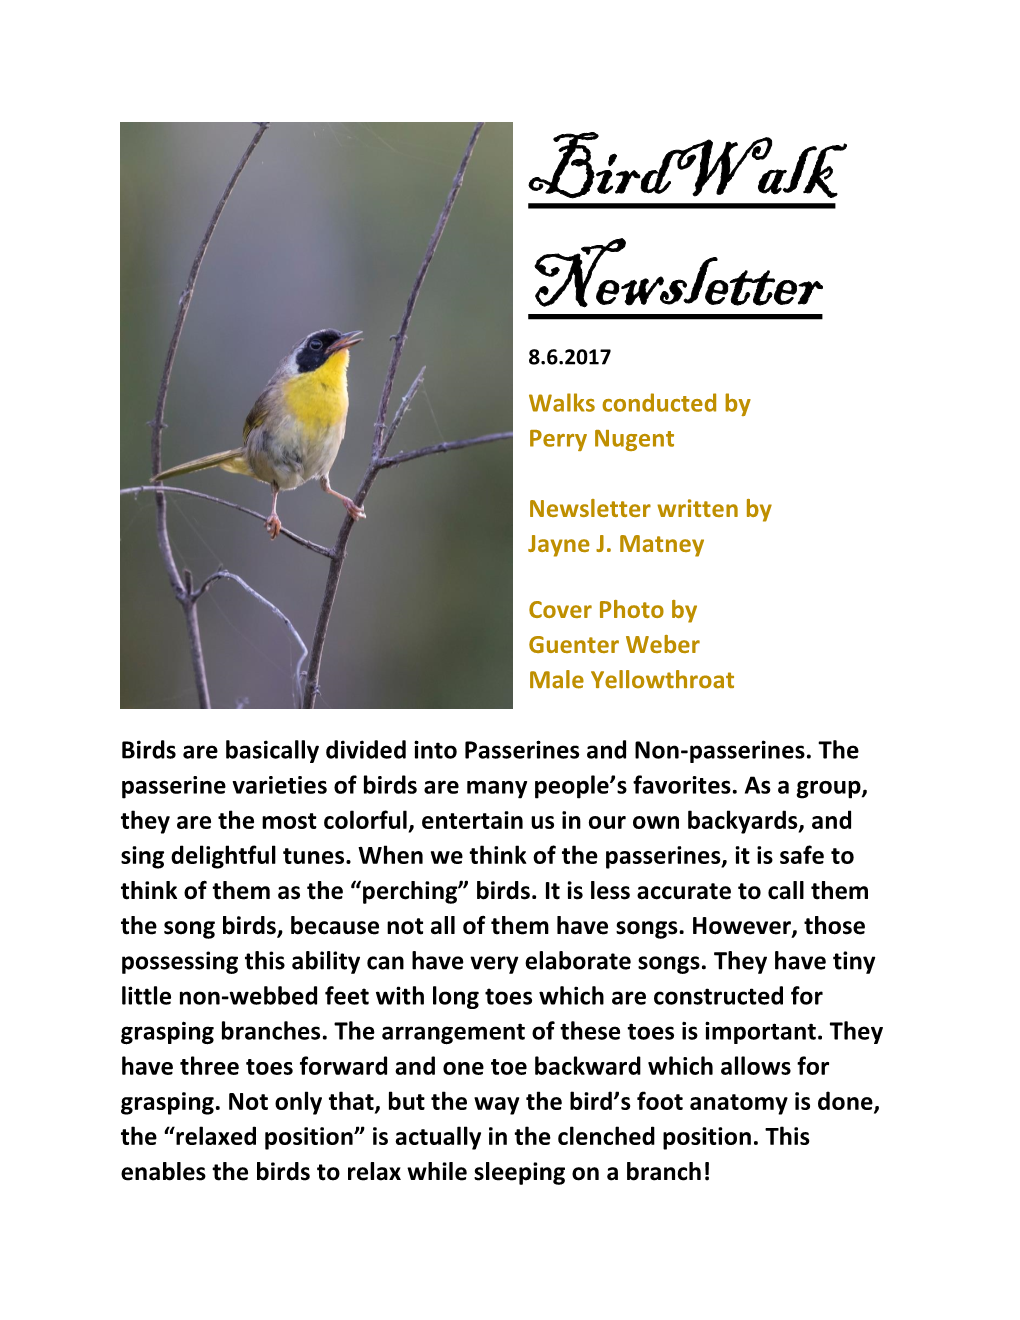 Birdwalk Newsletter